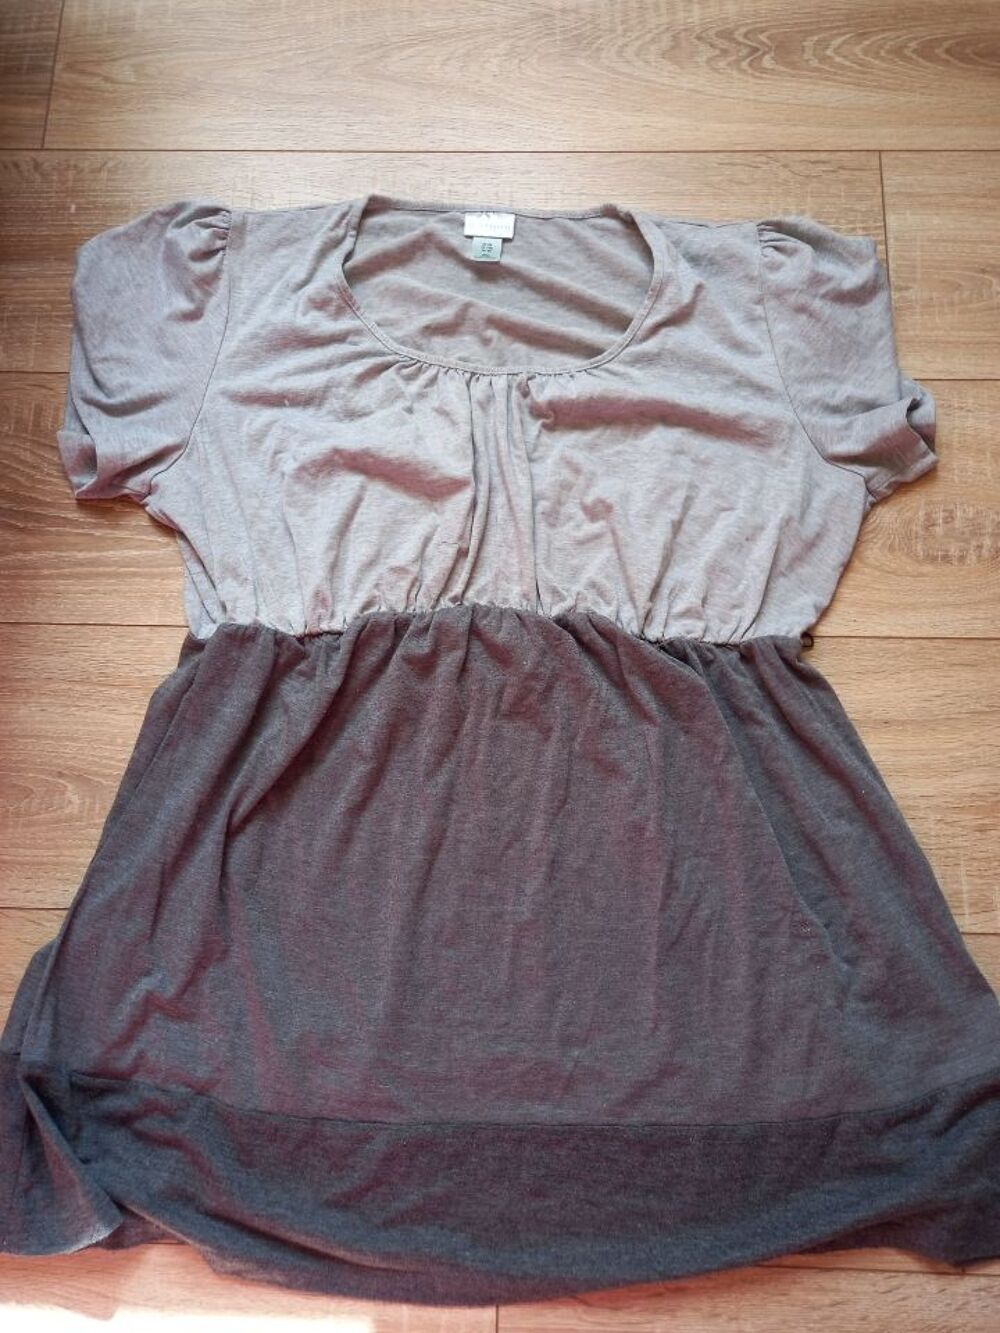 Tee-shirt tunique gris manches courtes Maternit&eacute; taille 48/5 Vtements